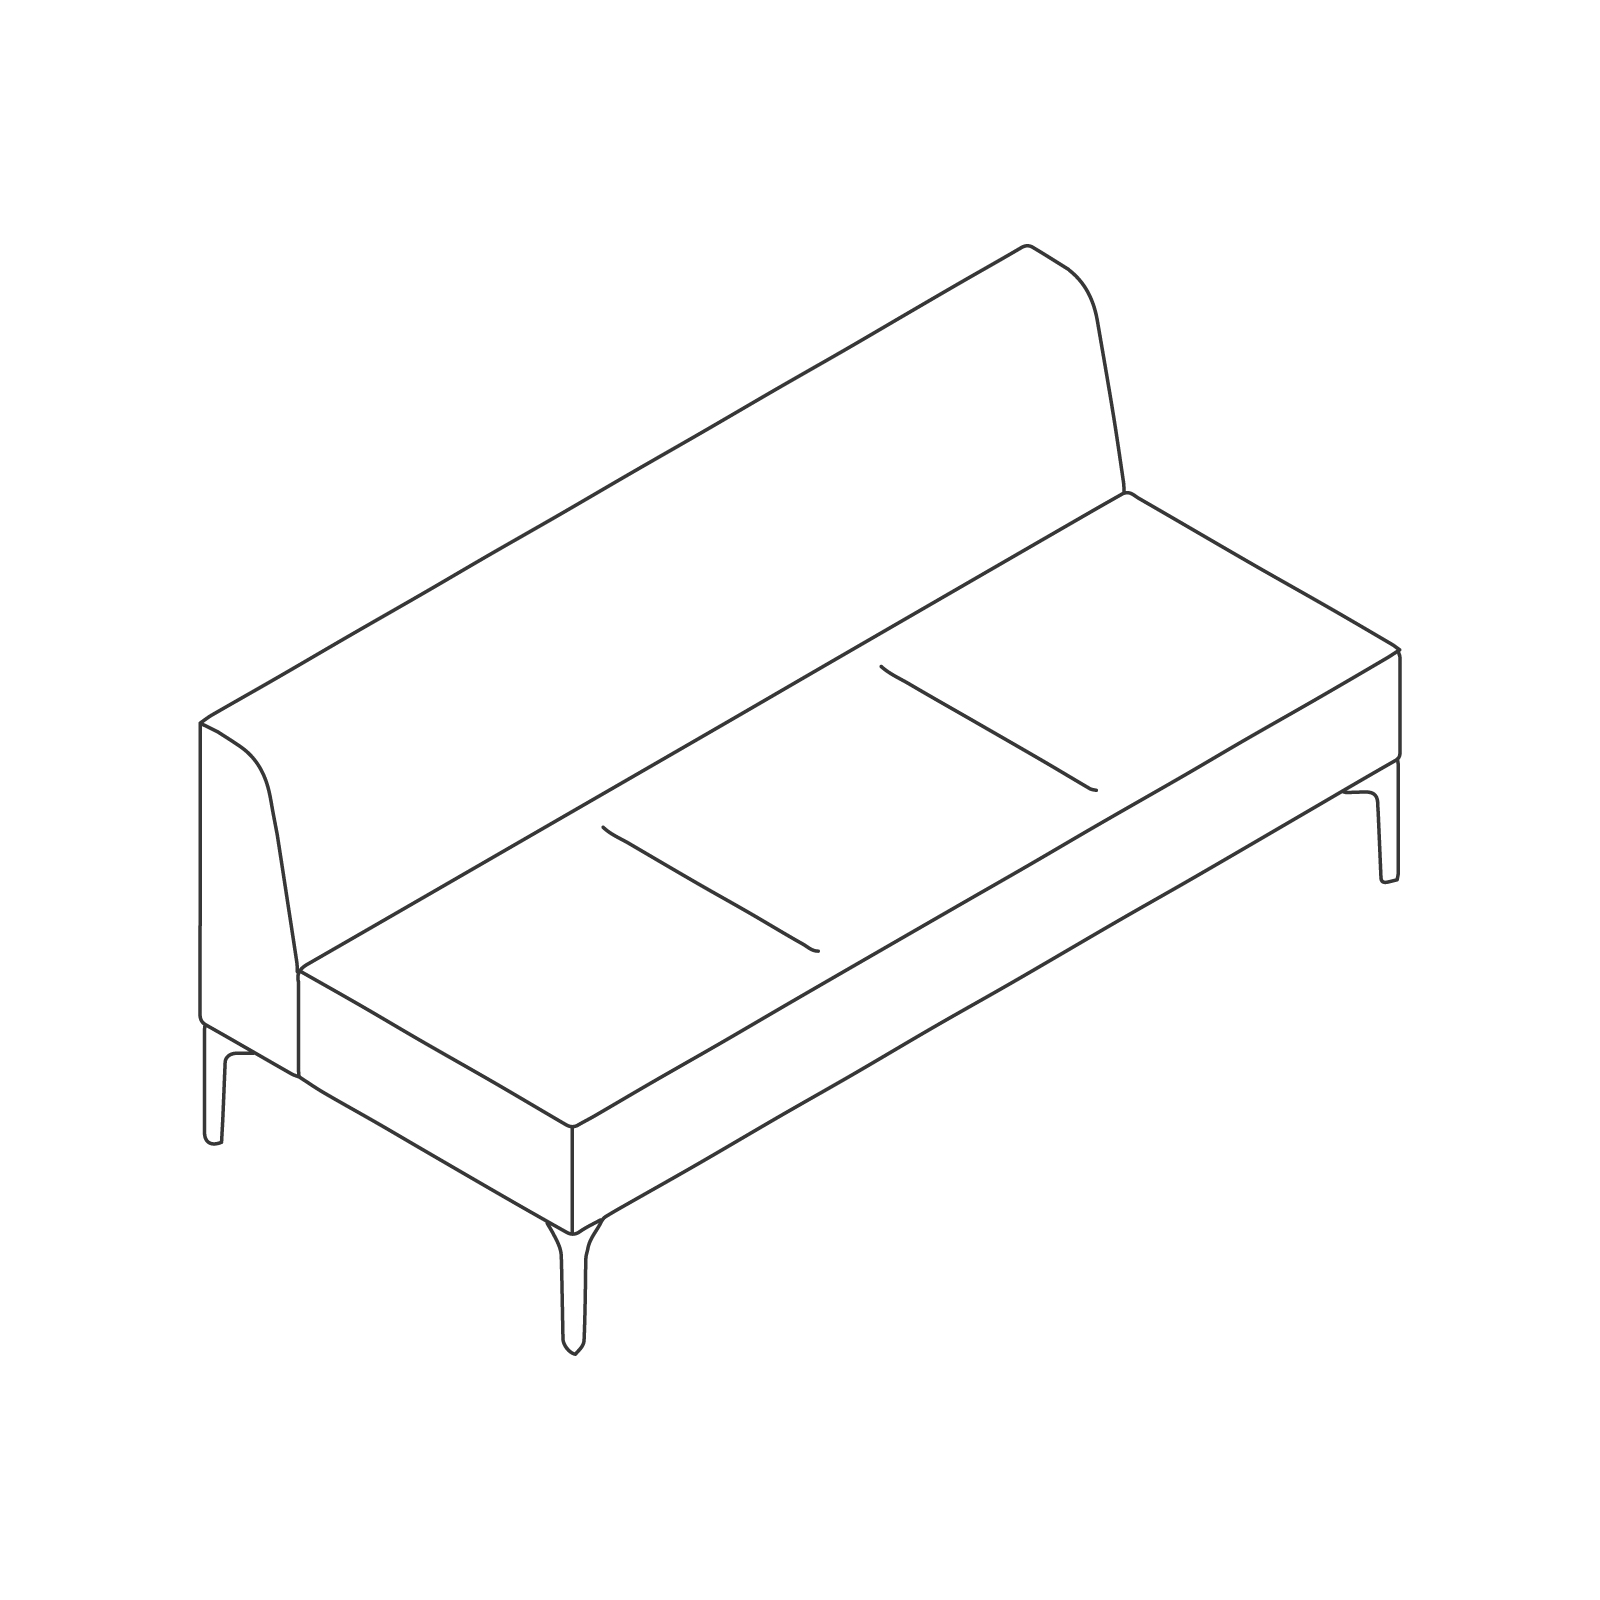 线描图 - Symbol模块化座椅 - 无扶手 - 三座